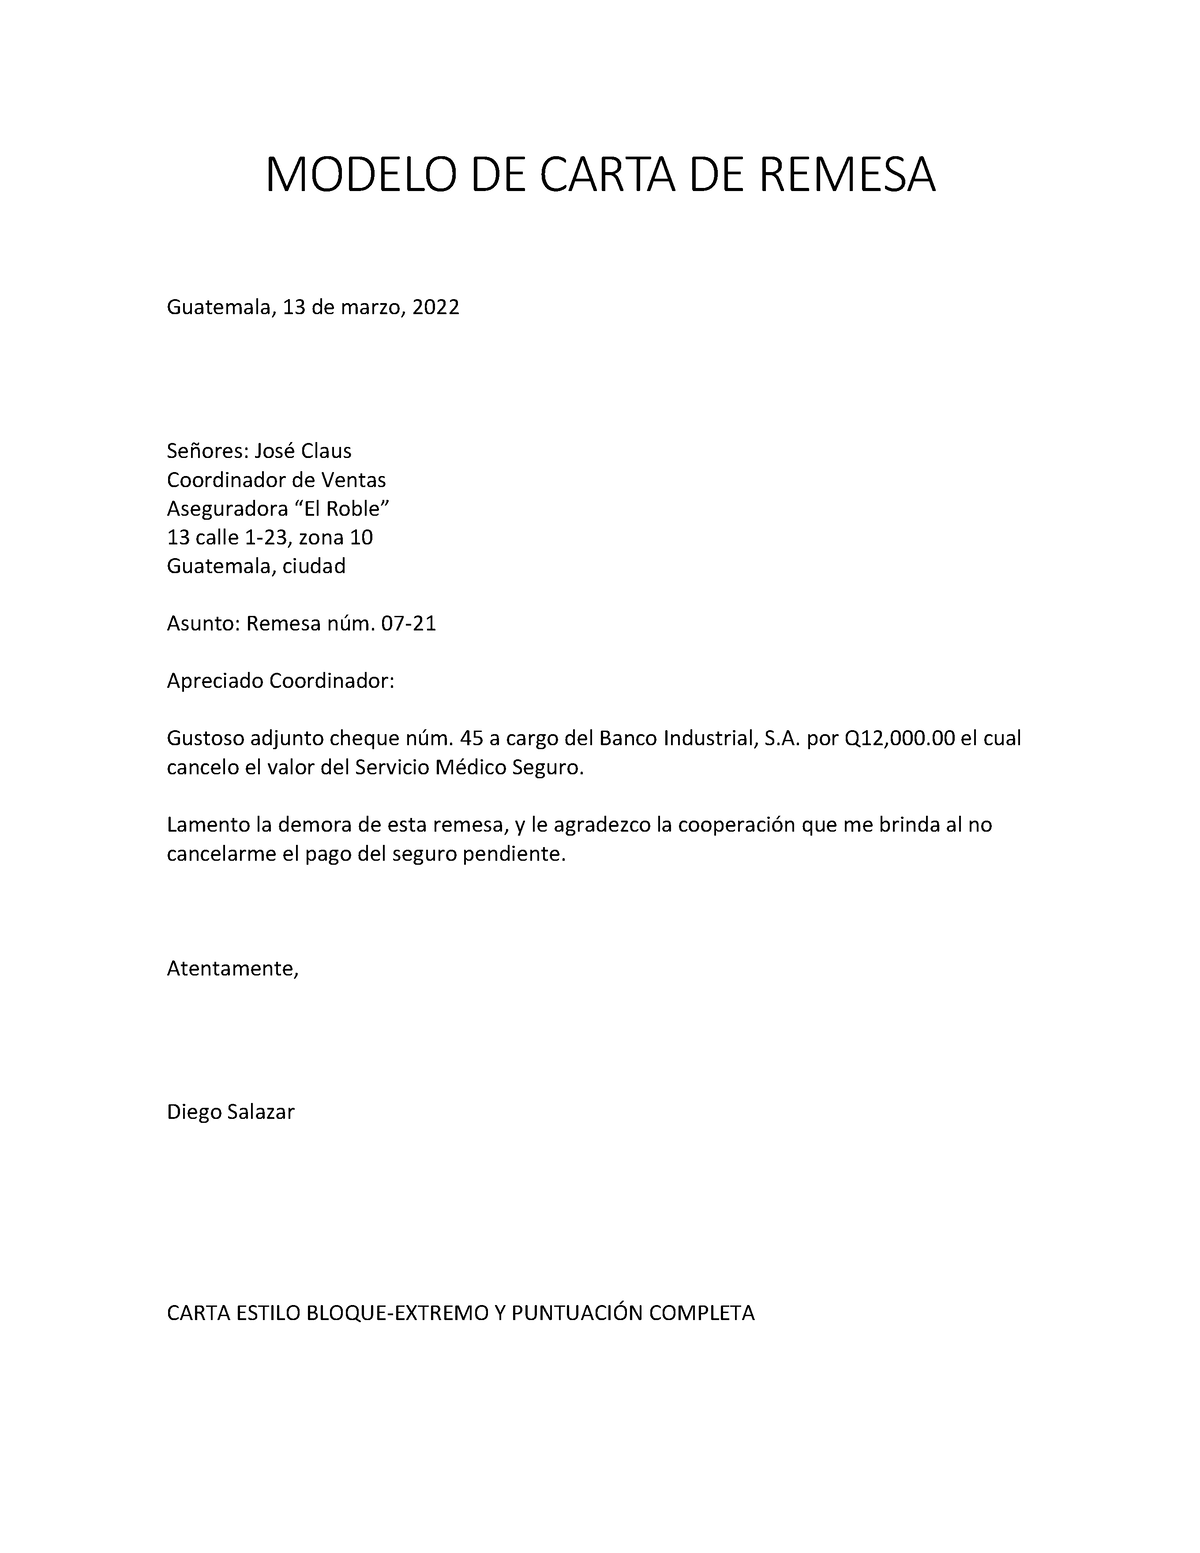 Carta De Remesa Y Respuesta Modelo De Carta De Remesa Guatemala 13 De Marzo 2022 Señores 6000